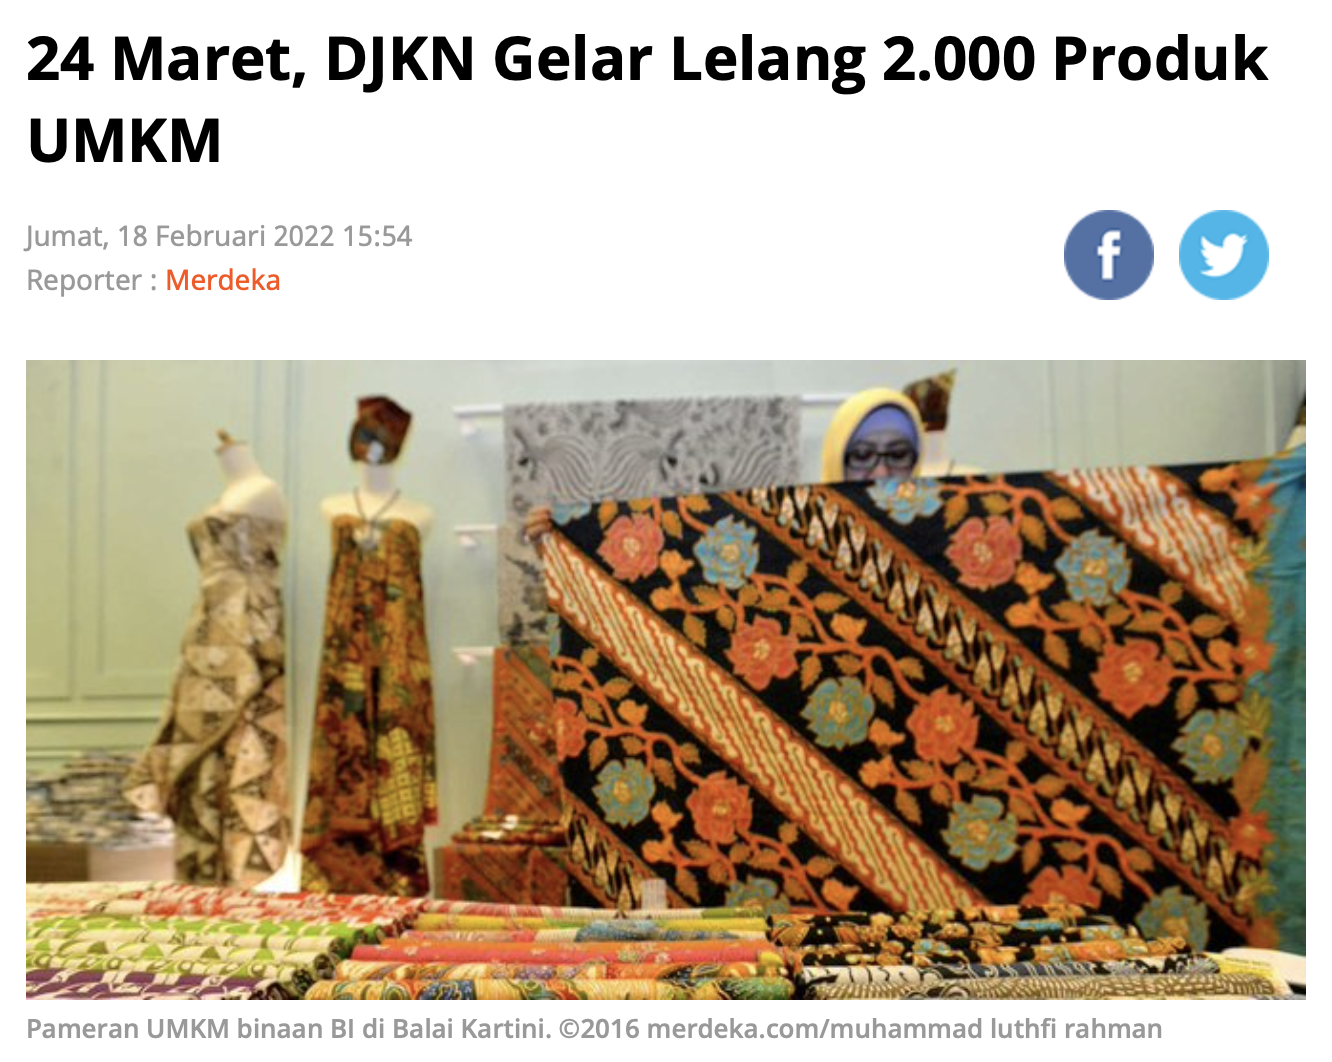 24 Maret, DJKN Gelar Lelang 2.000 Produk UMKM